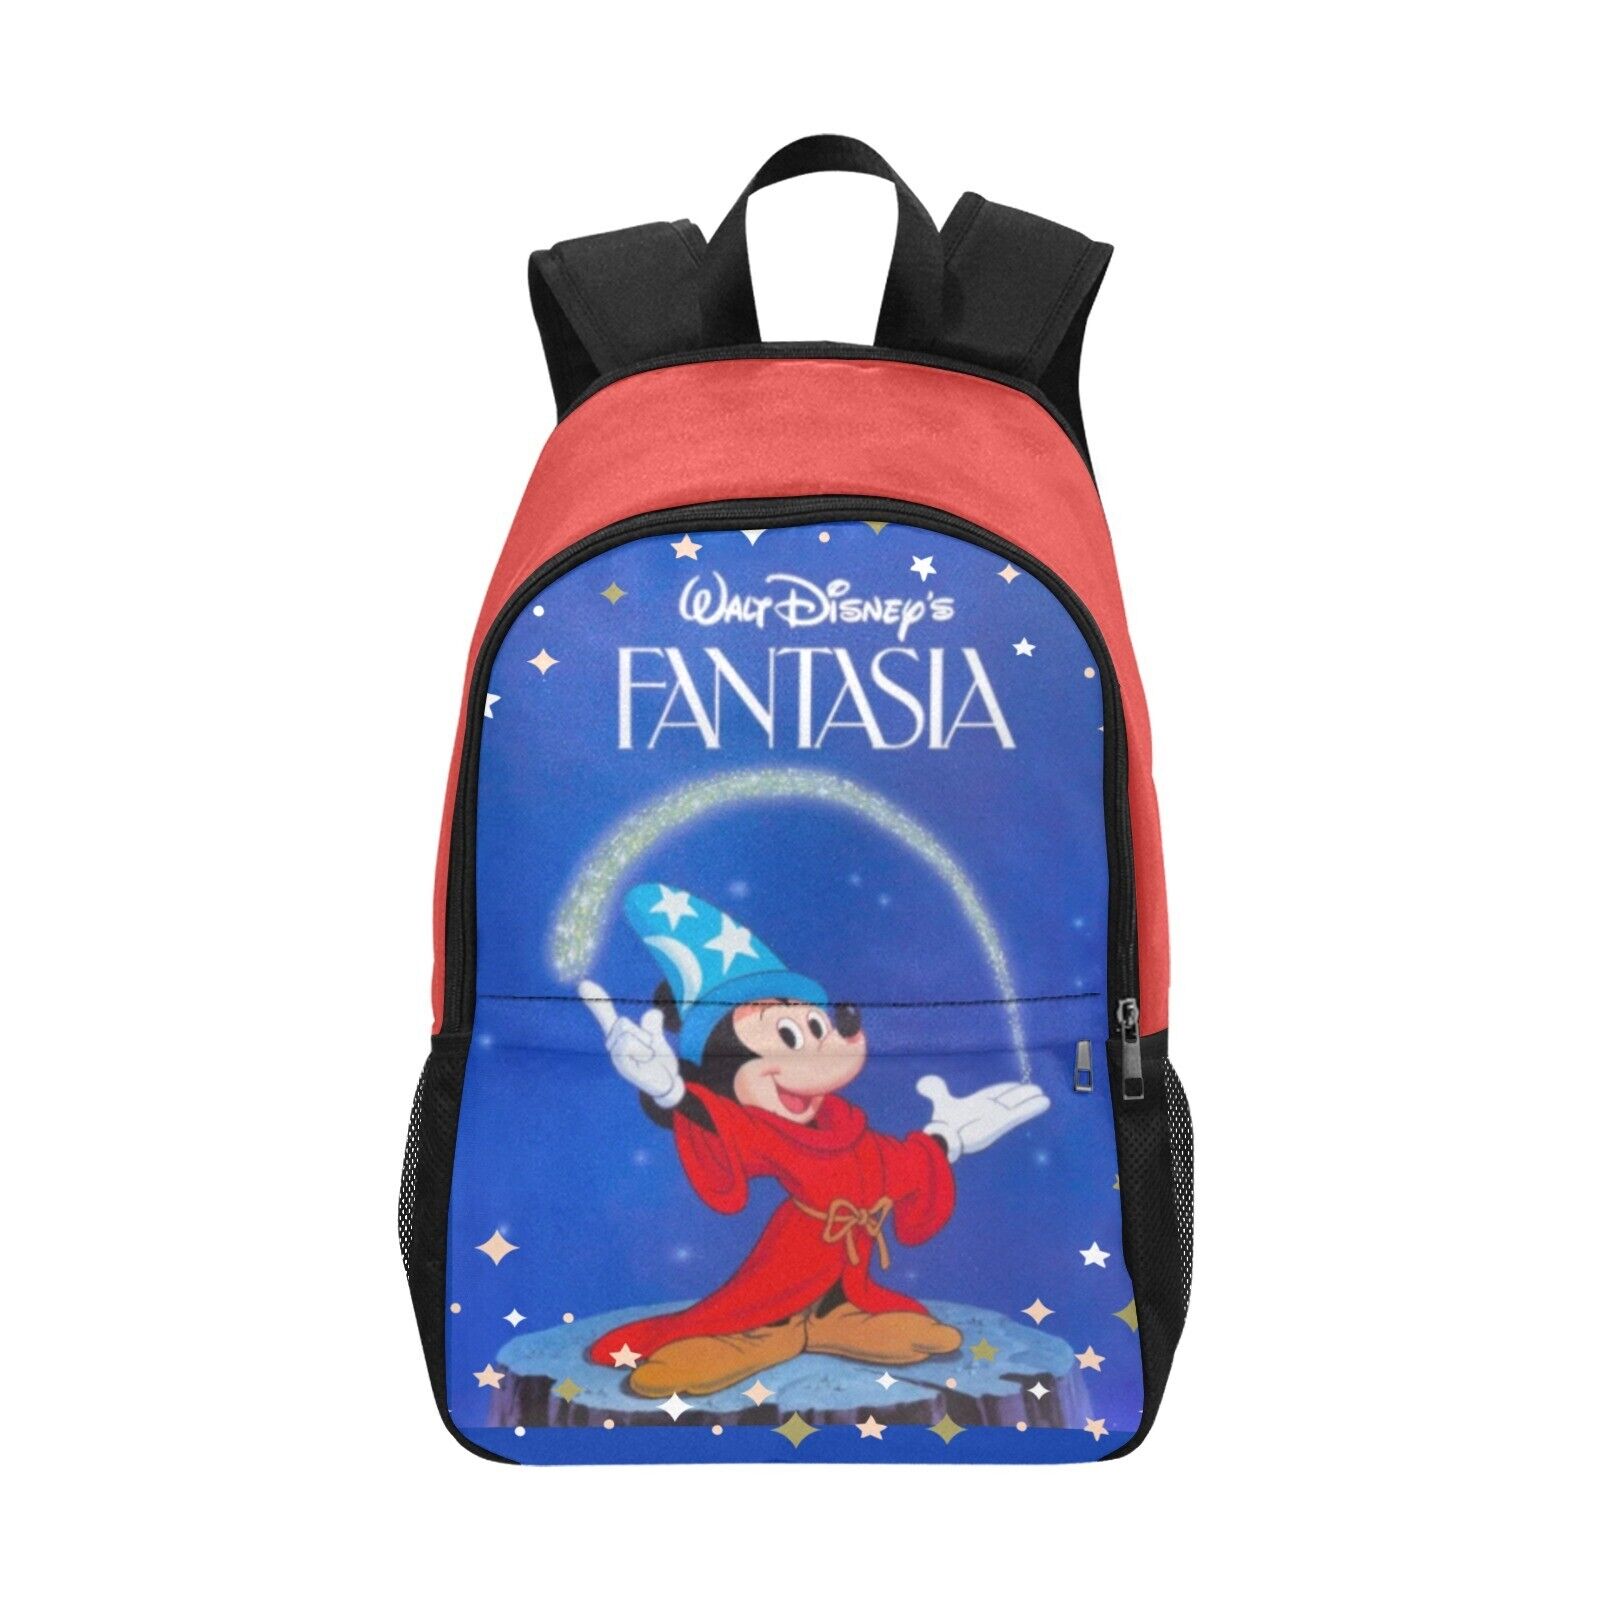 Disney Fantasia Movie Adult Size Backpack, Disney Backpack, Laptop Backpack